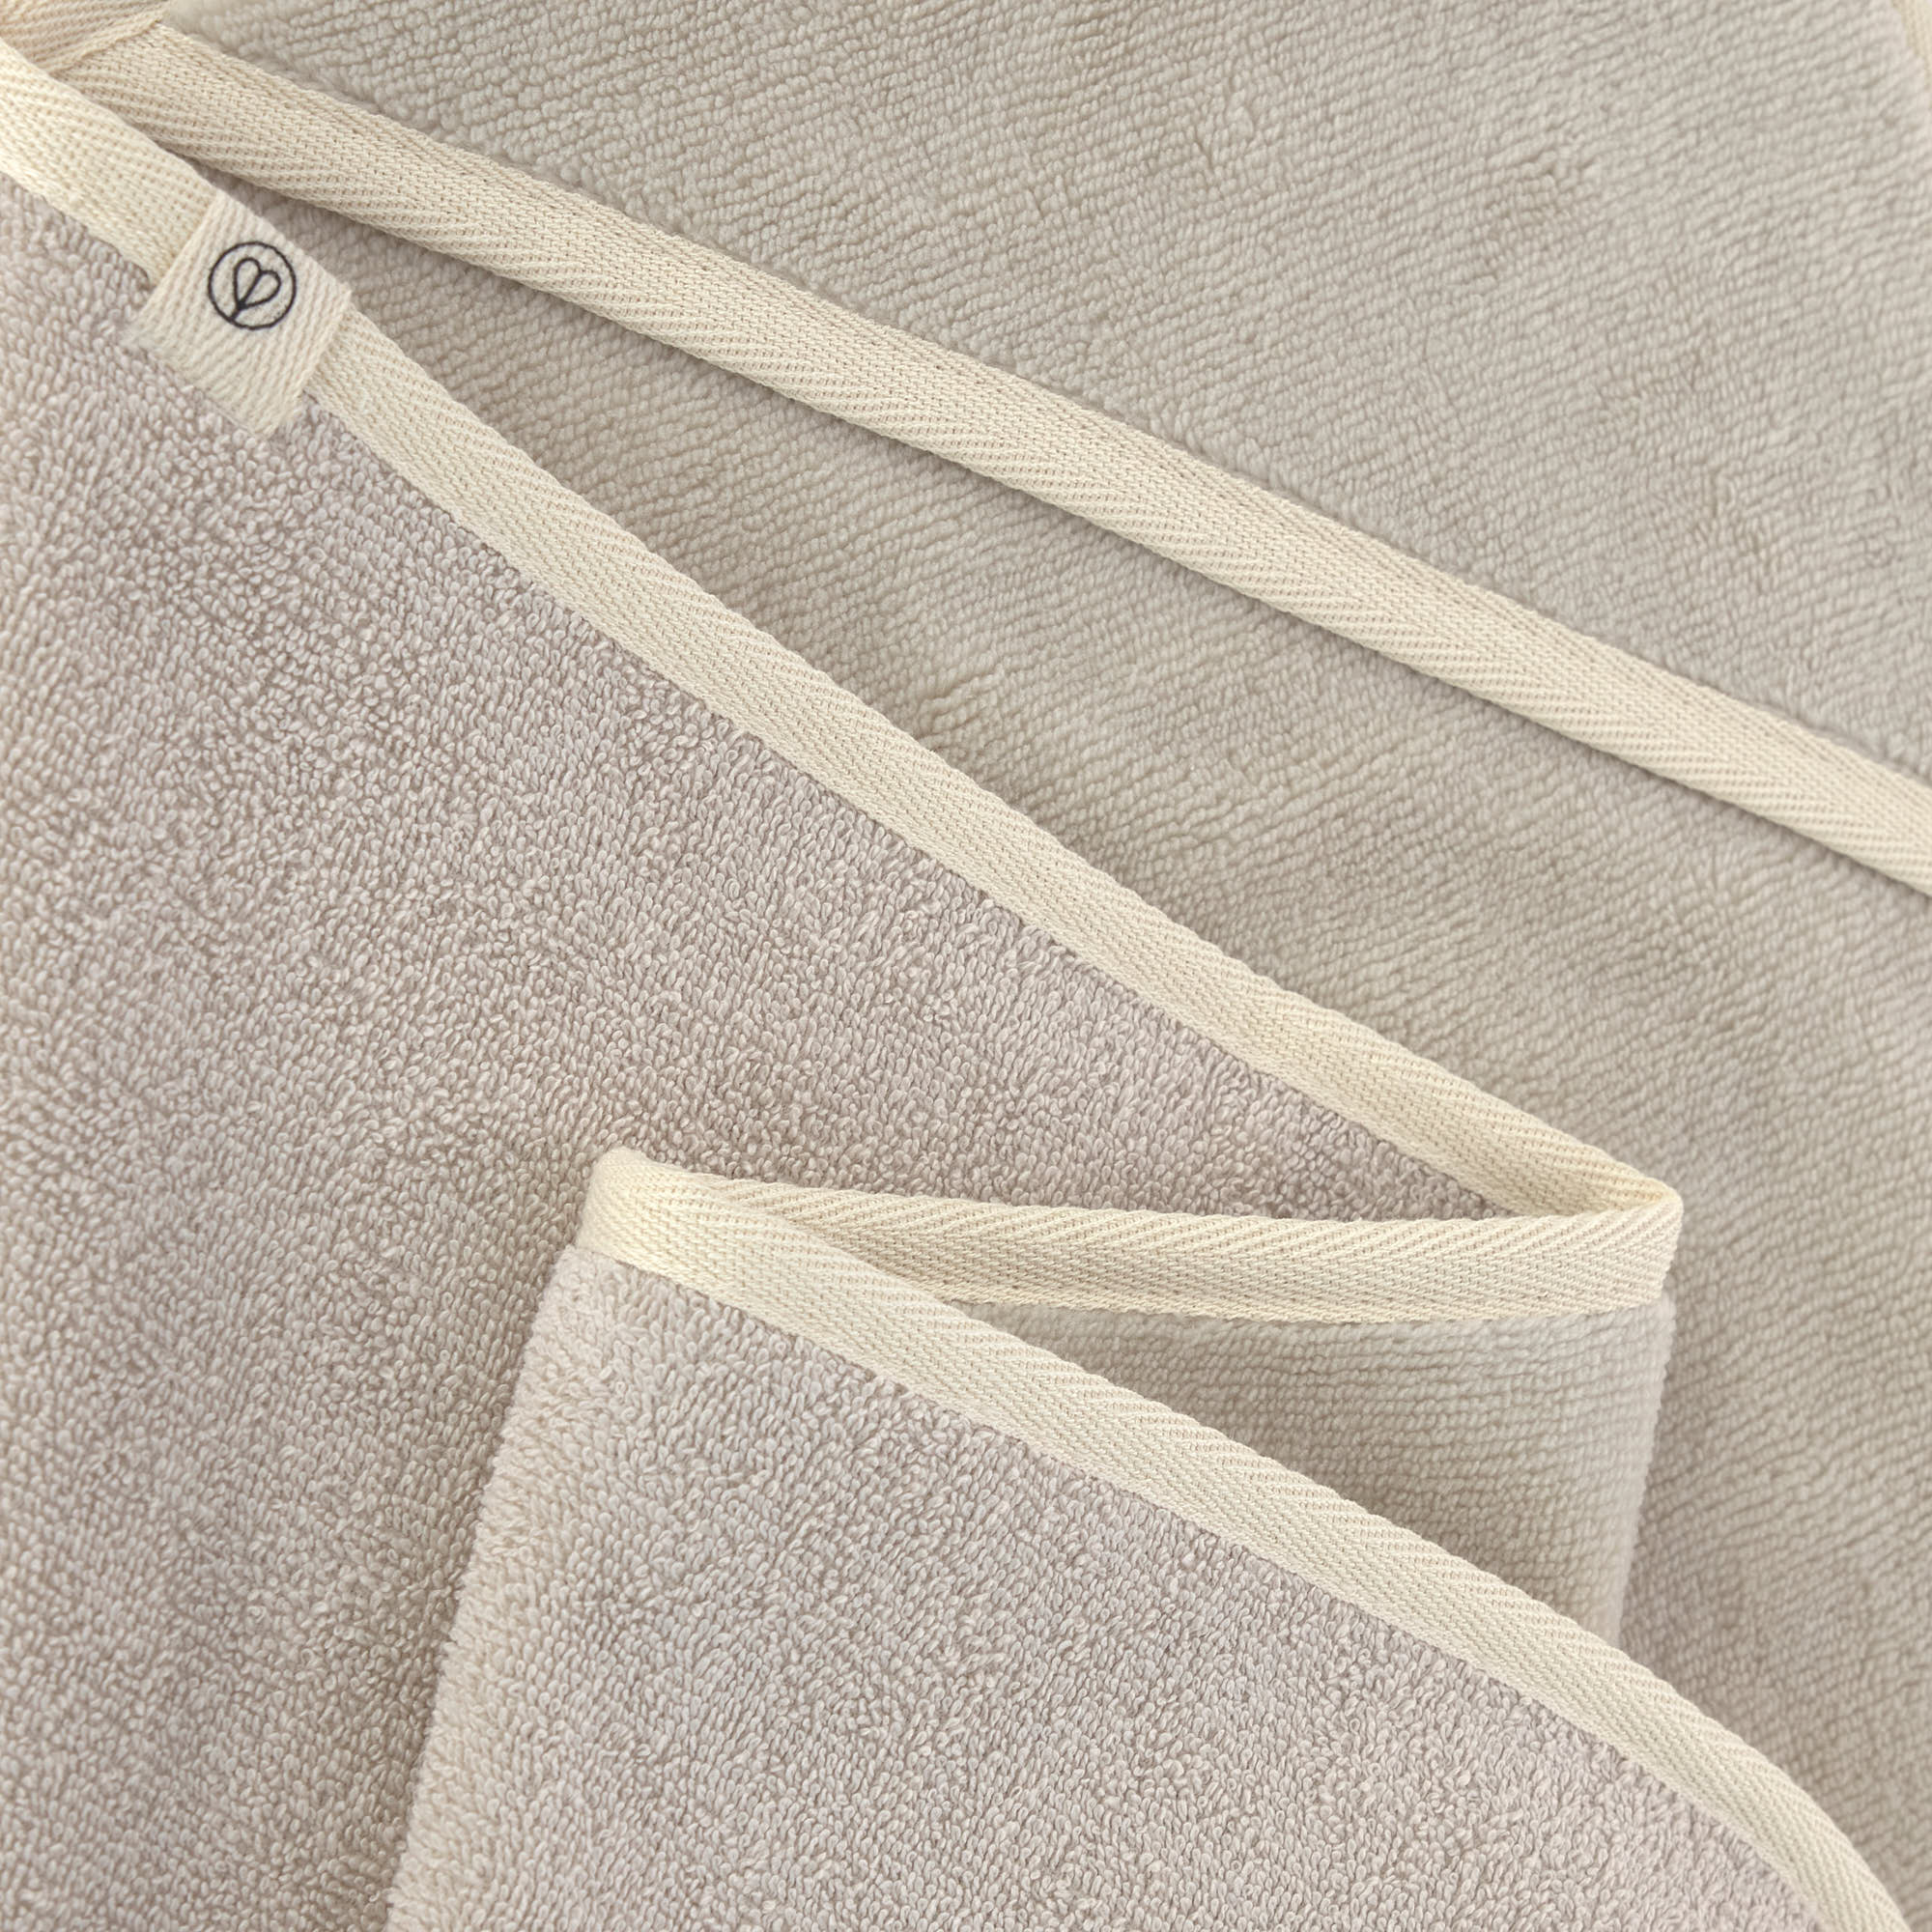 Dog towel - Kosy, beige